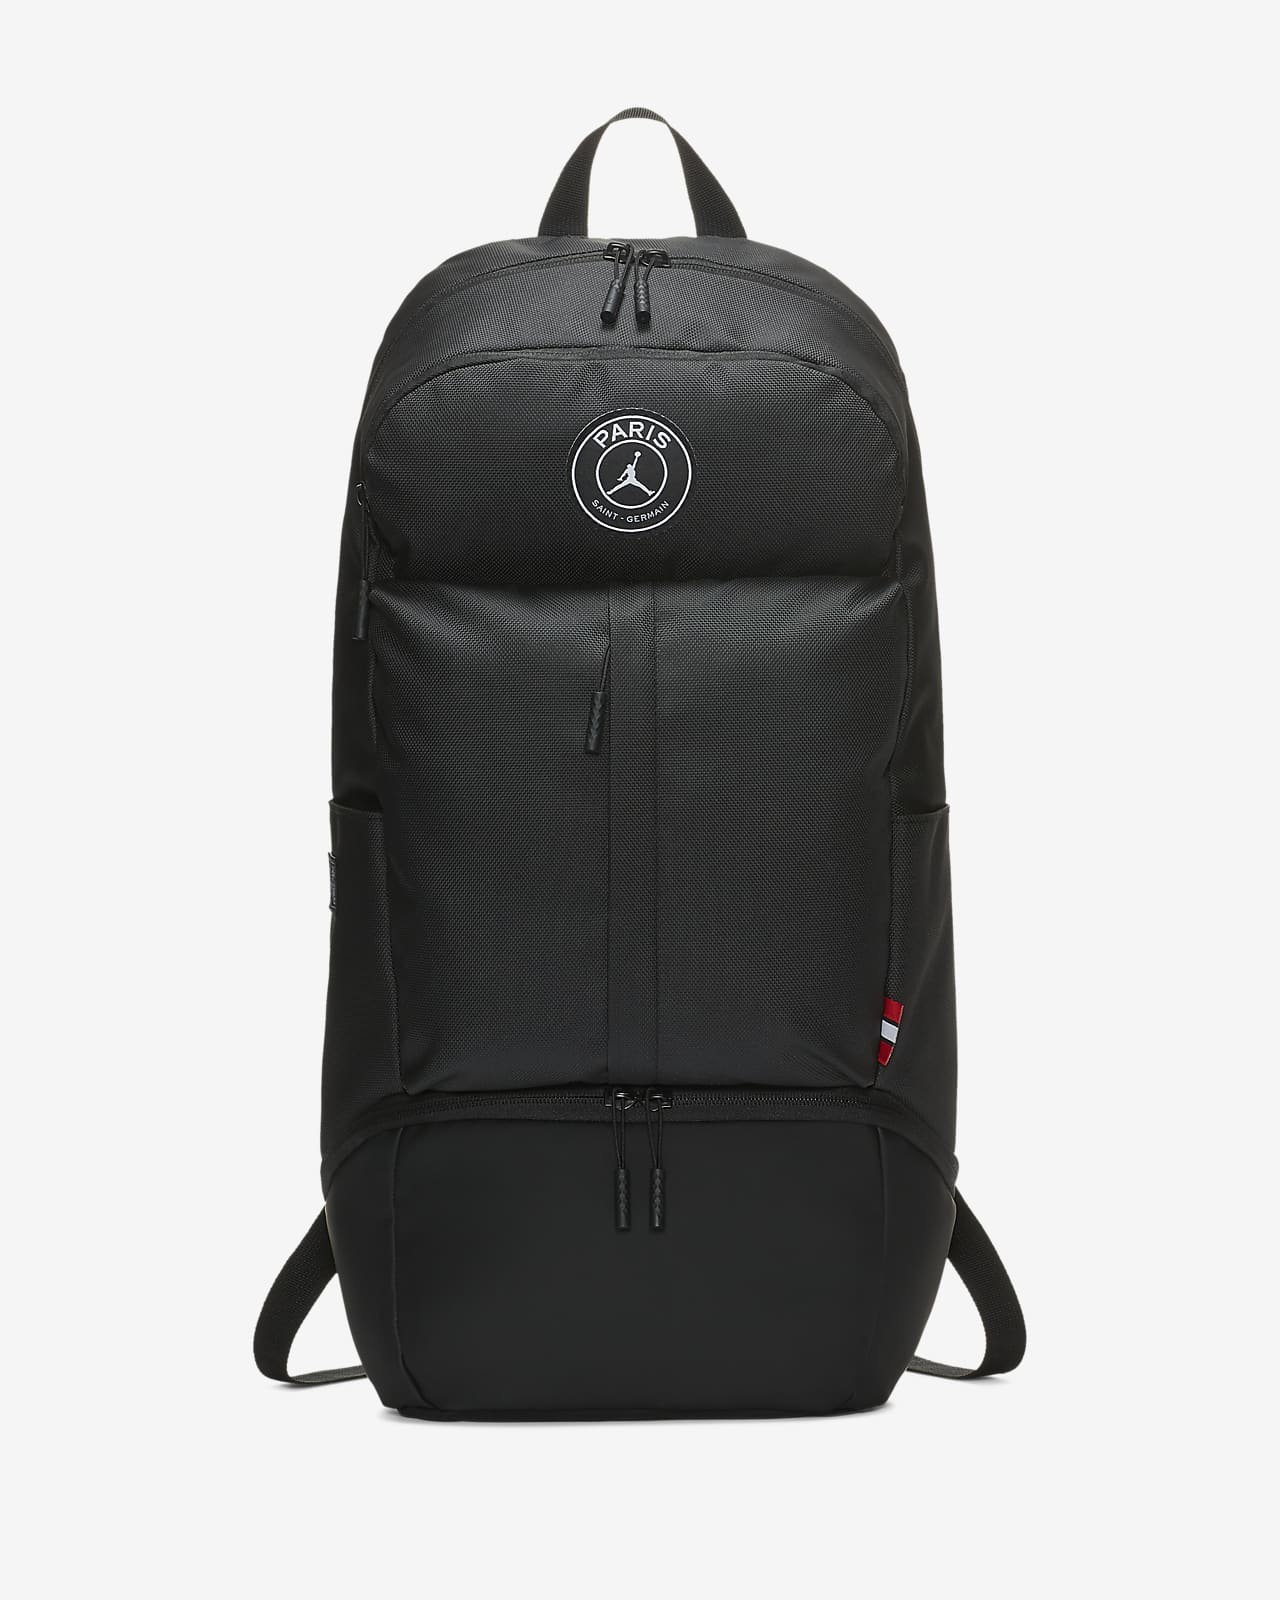 PSG Backpack